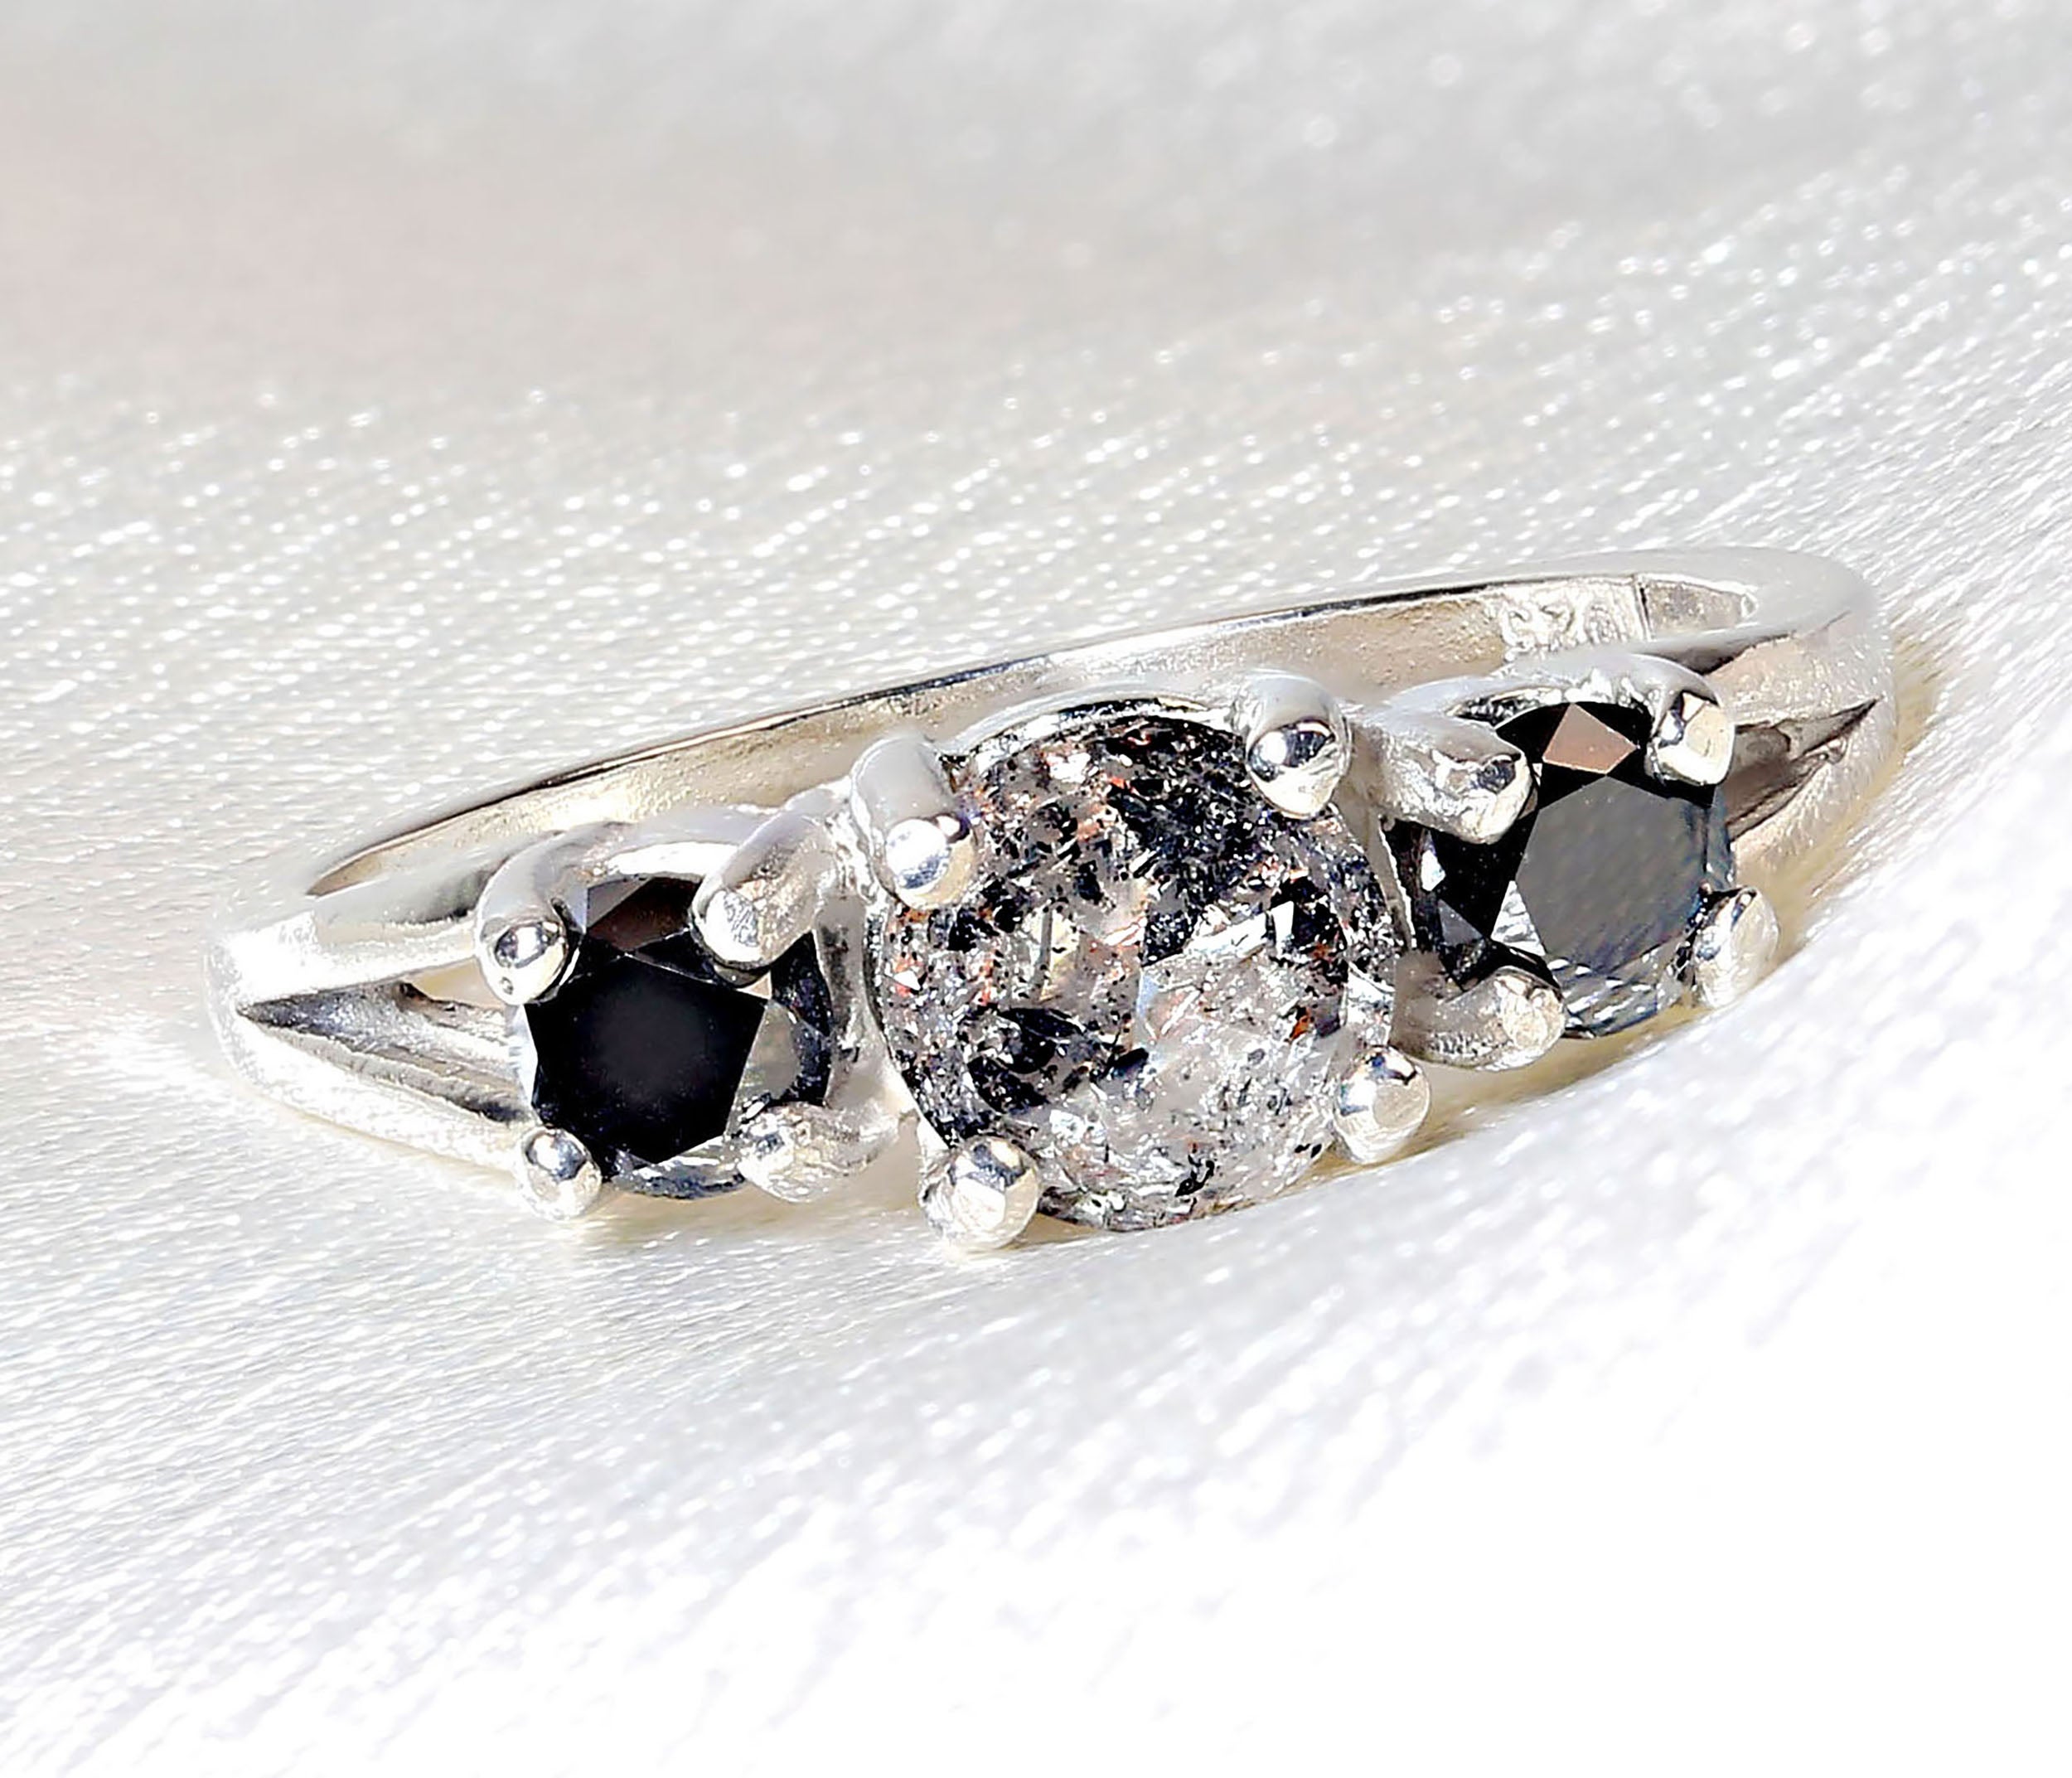 Einzigartiger Salz- und Pfefferdiamant, flankiert von schwarzen Diamanten, gefasst in Sterlingsilber.  Dieser elegante Ring zeichnet sich durch den ungewöhnlichen und einzigartigen 